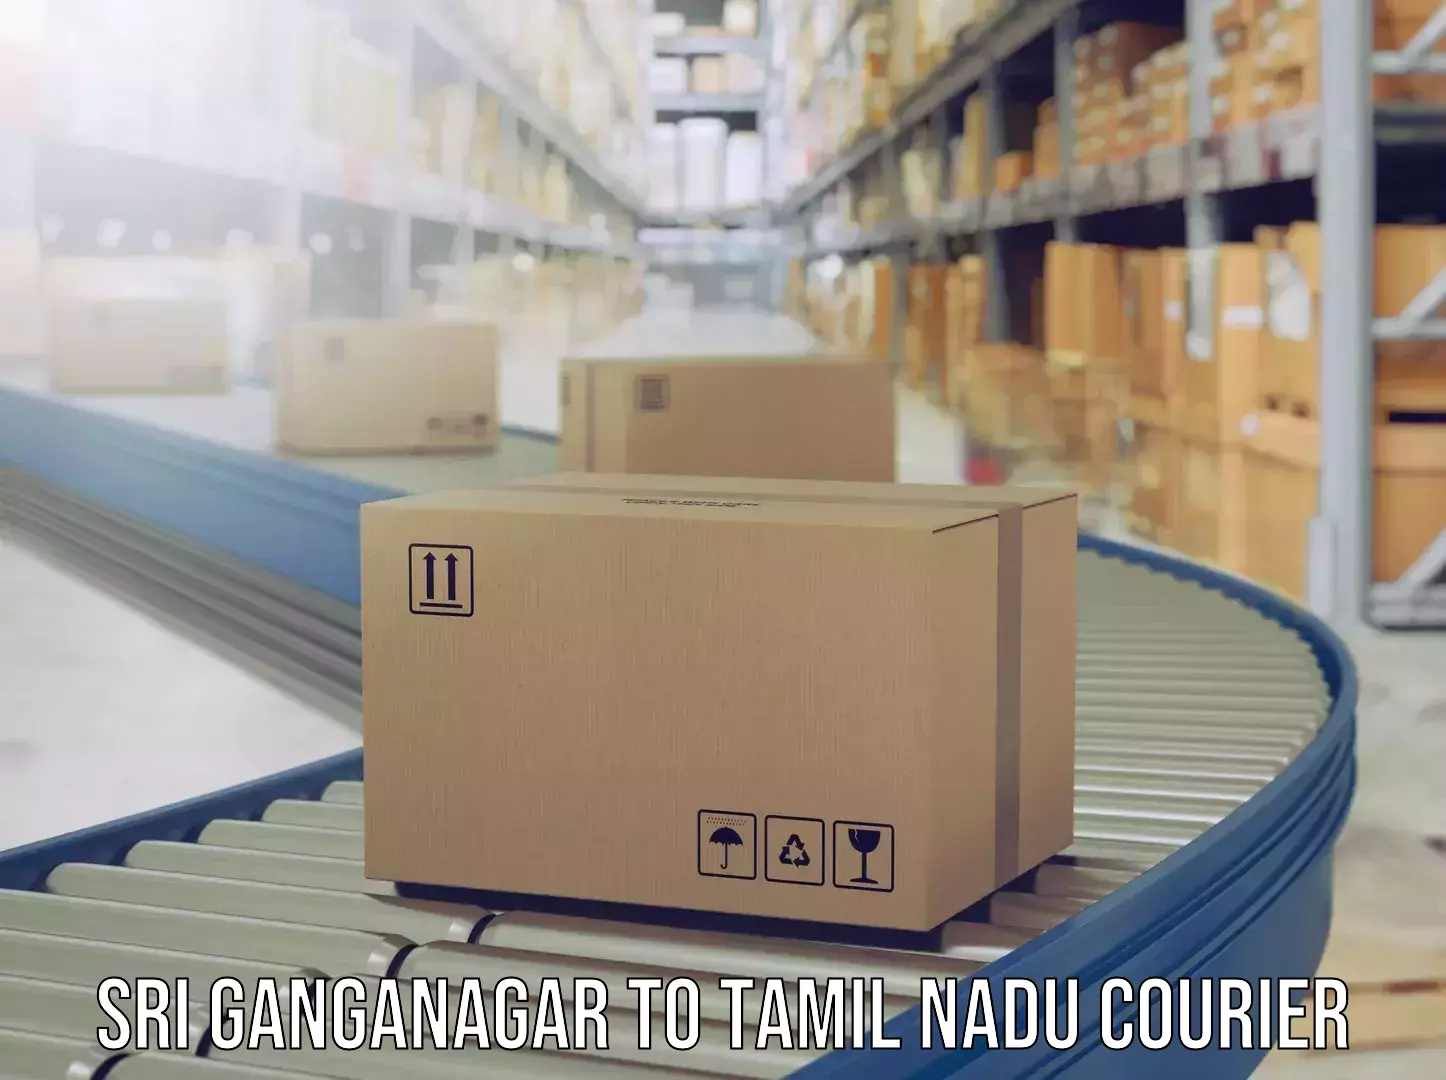 Luggage transport company Sri Ganganagar to Tirukalukundram